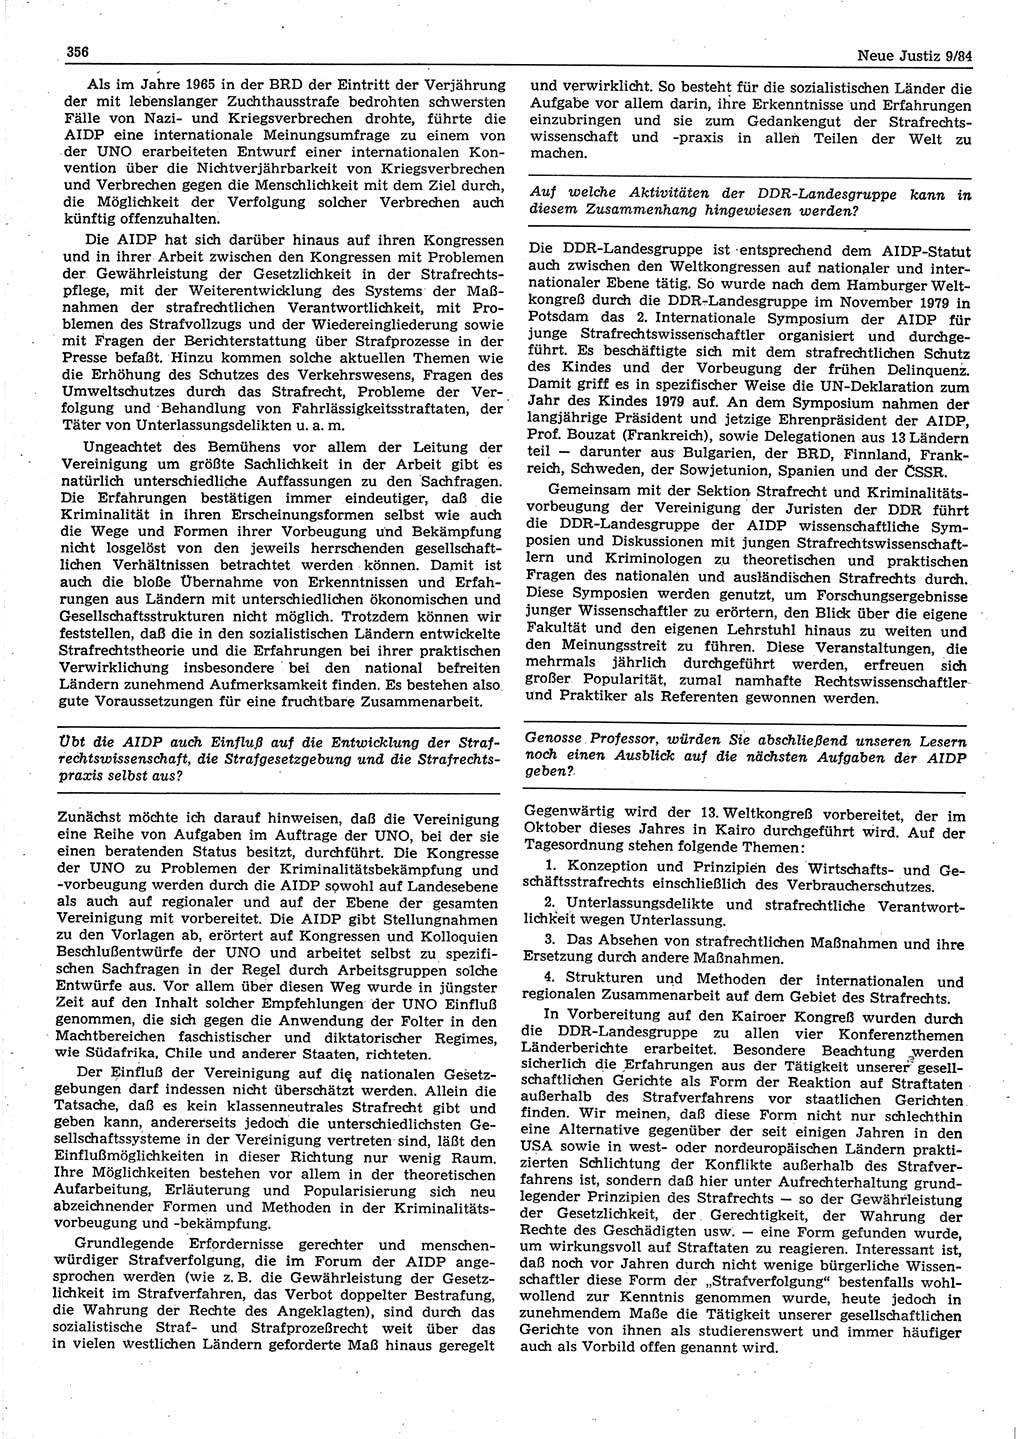 Neue Justiz (NJ), Zeitschrift für sozialistisches Recht und Gesetzlichkeit [Deutsche Demokratische Republik (DDR)], 38. Jahrgang 1984, Seite 356 (NJ DDR 1984, S. 356)